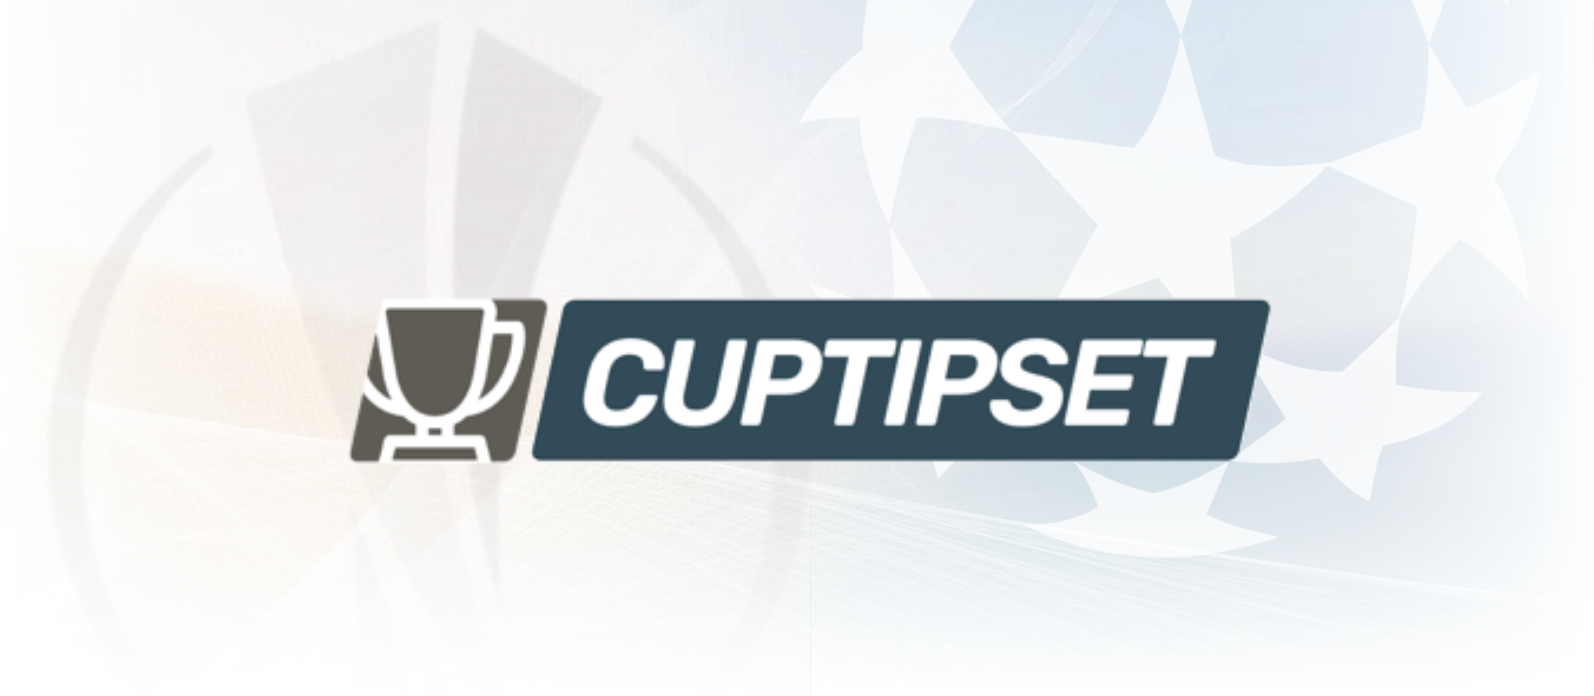 Cuptipset v50 – 8 matcher från Champions League och Europa League